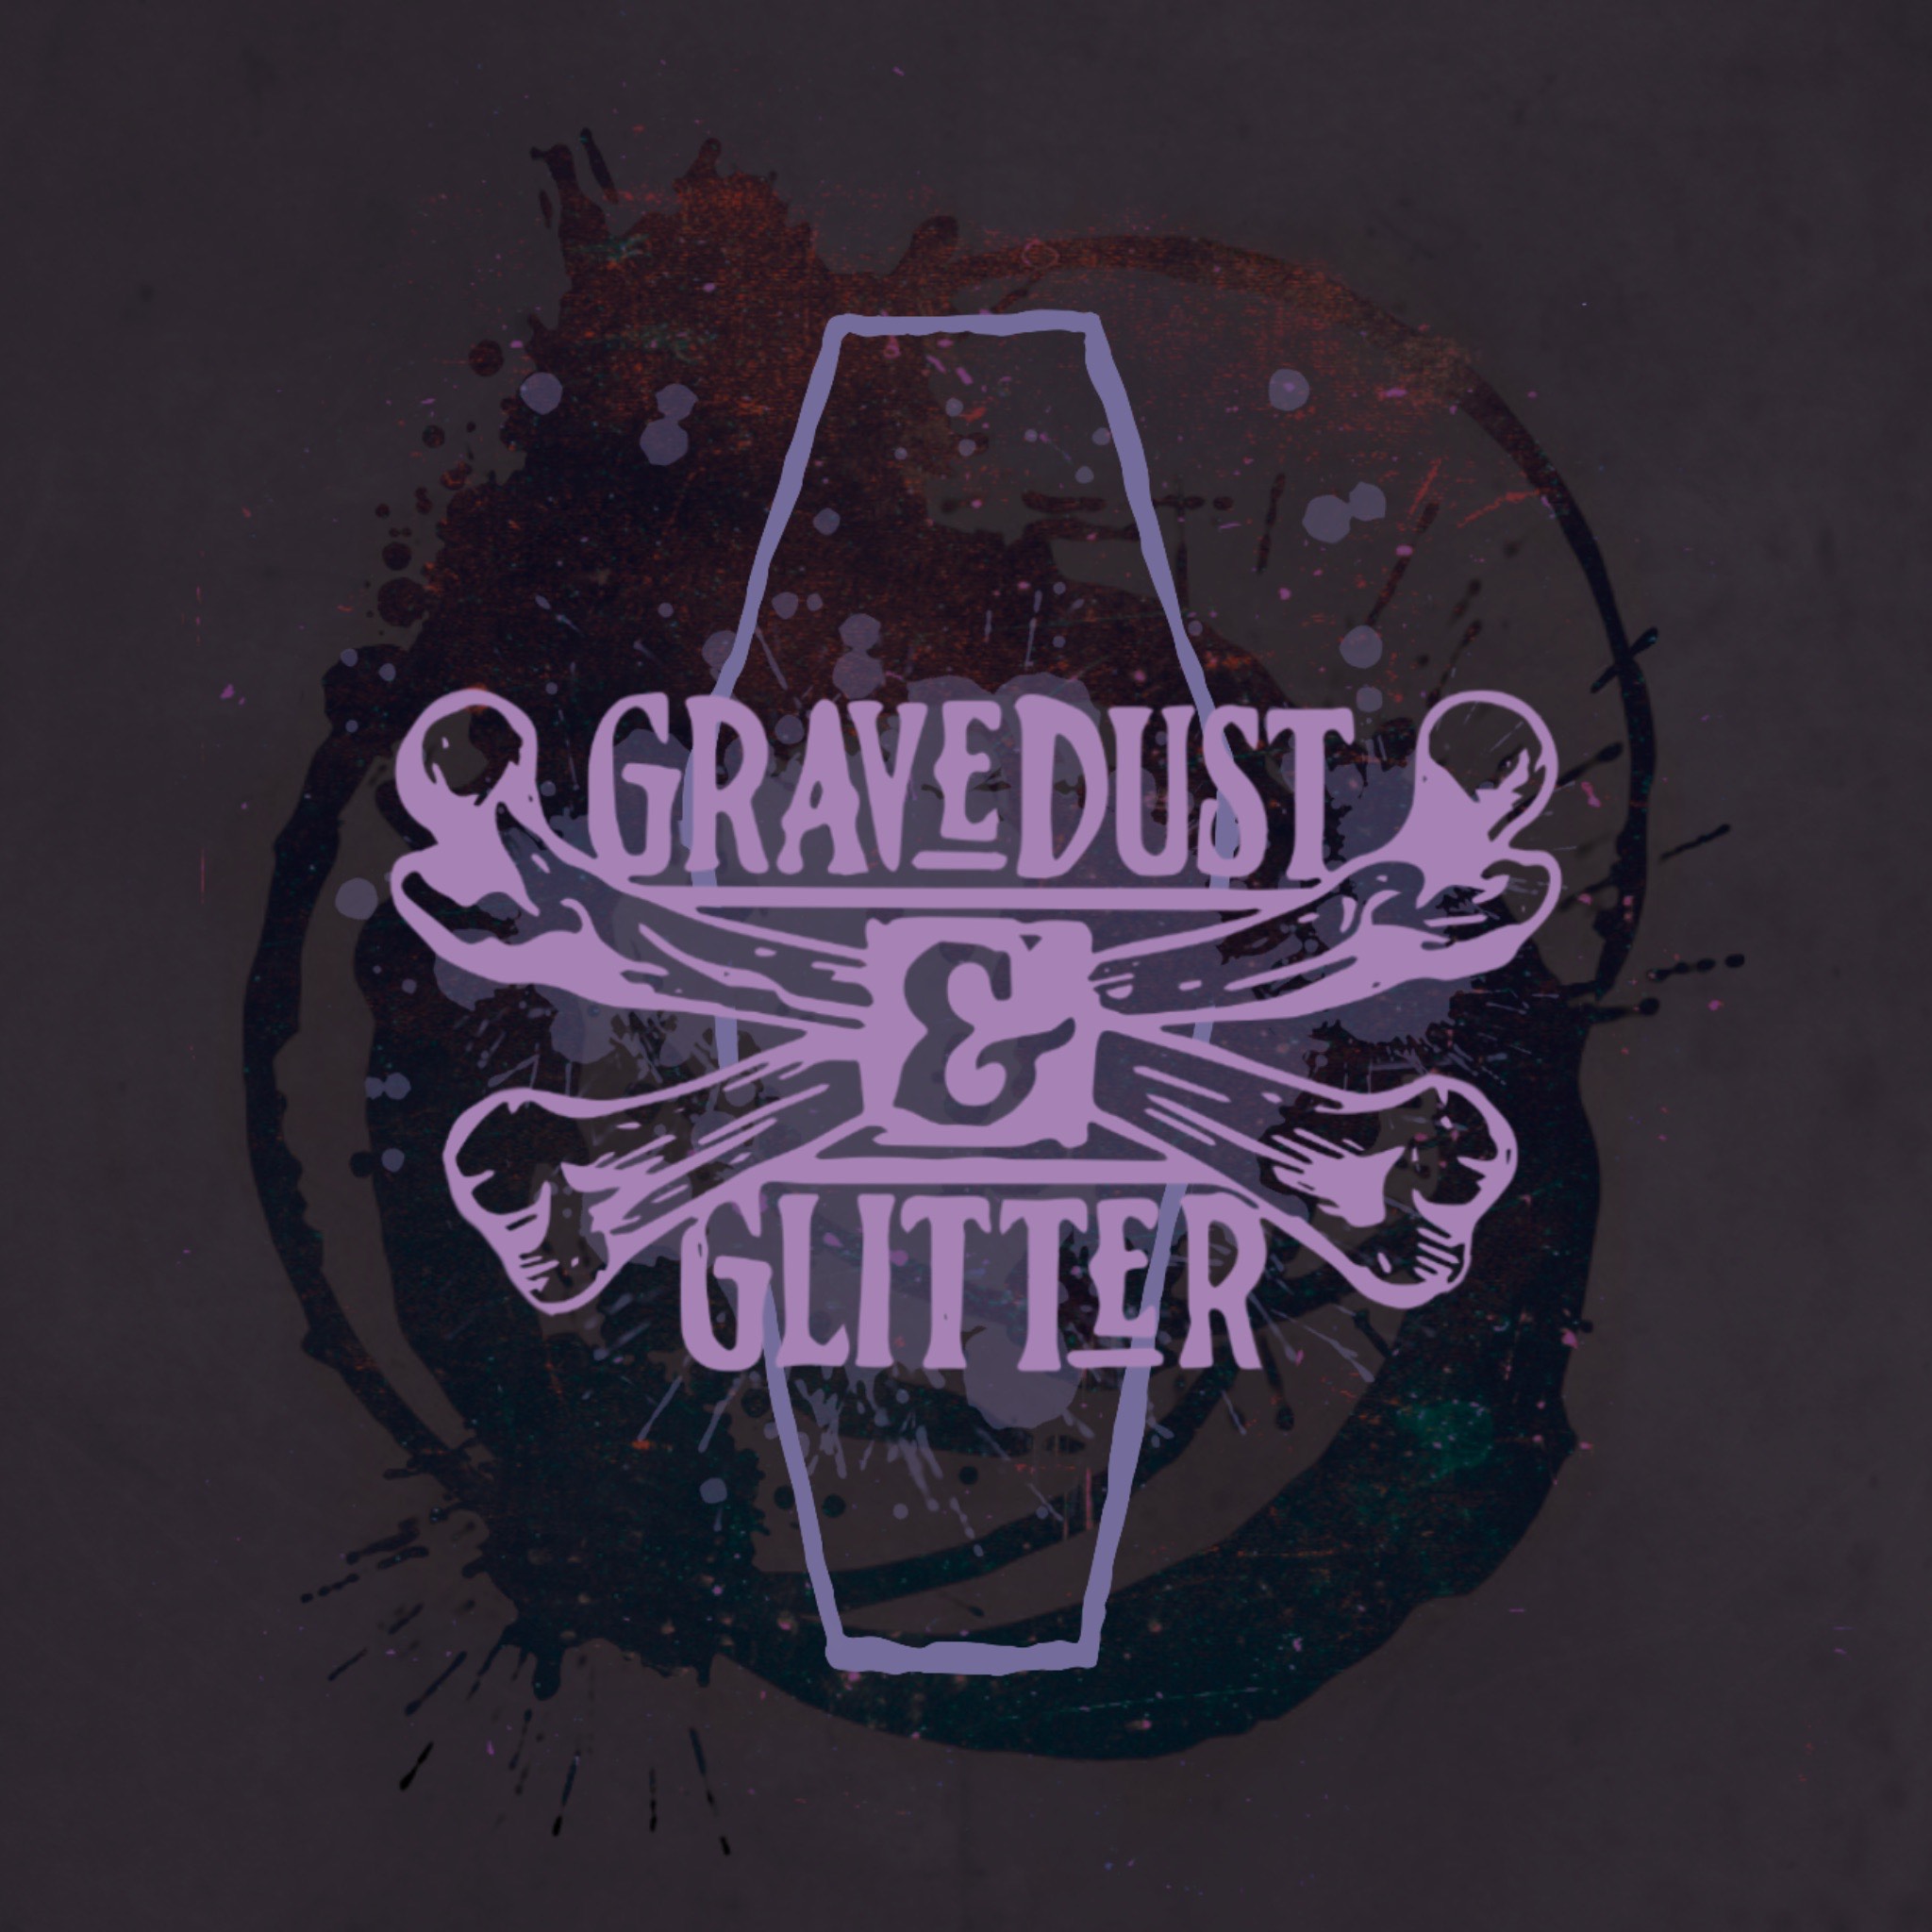 Gravedust and Glitter